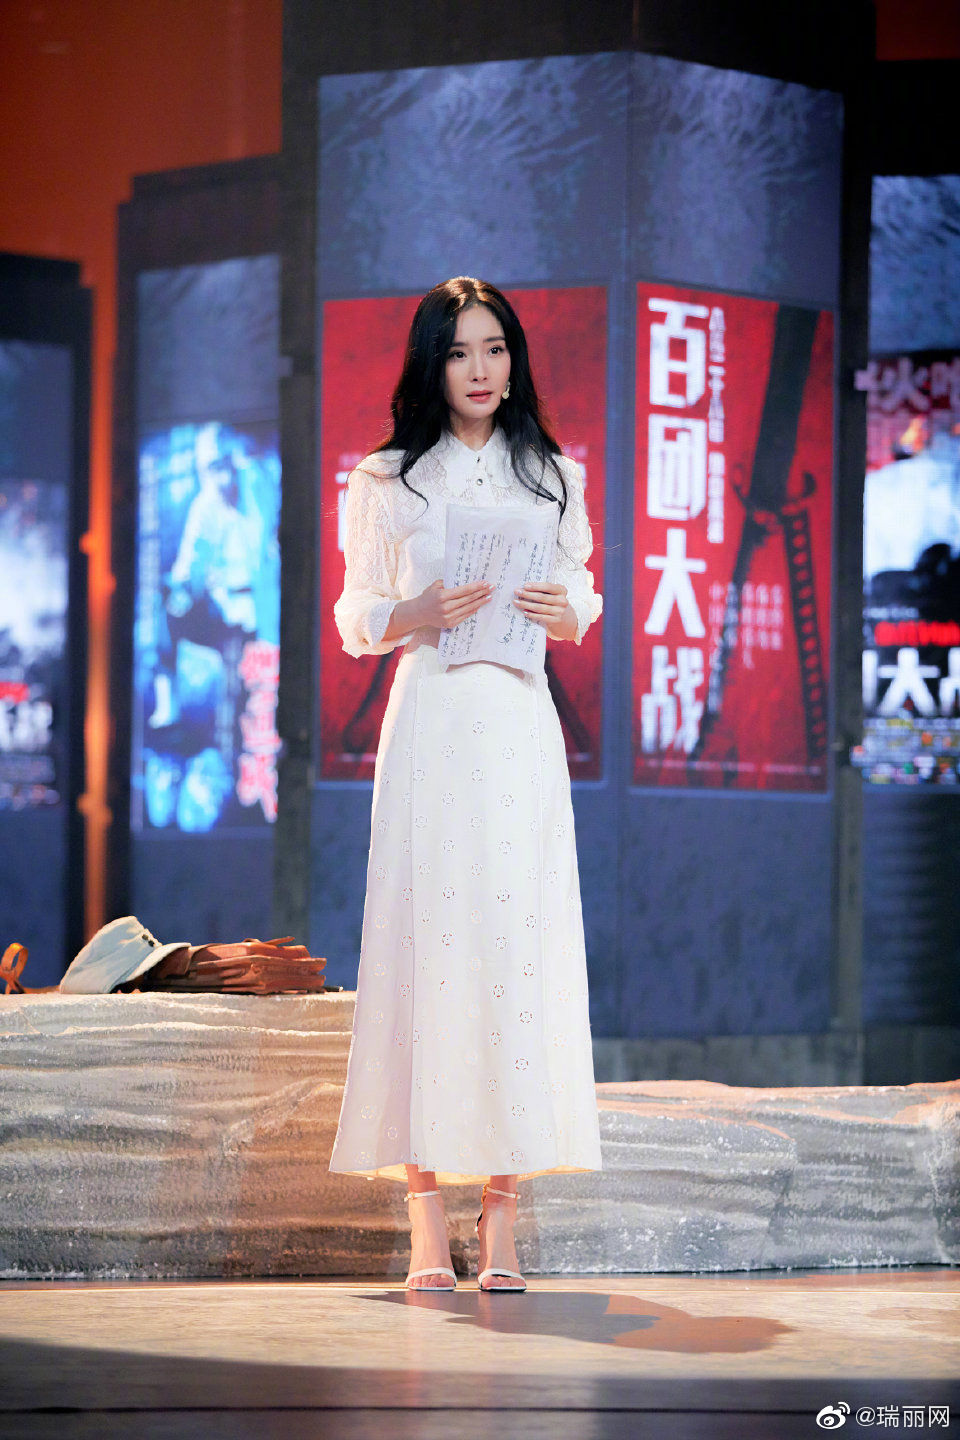 Đụng váy với Seo Ye Ji là Dương Mịch đã gặp kỳ phùng địch thủ, nàng Bạch Thiển bị lấn át hoàn toàn về độ sang chảnh - Ảnh 8.